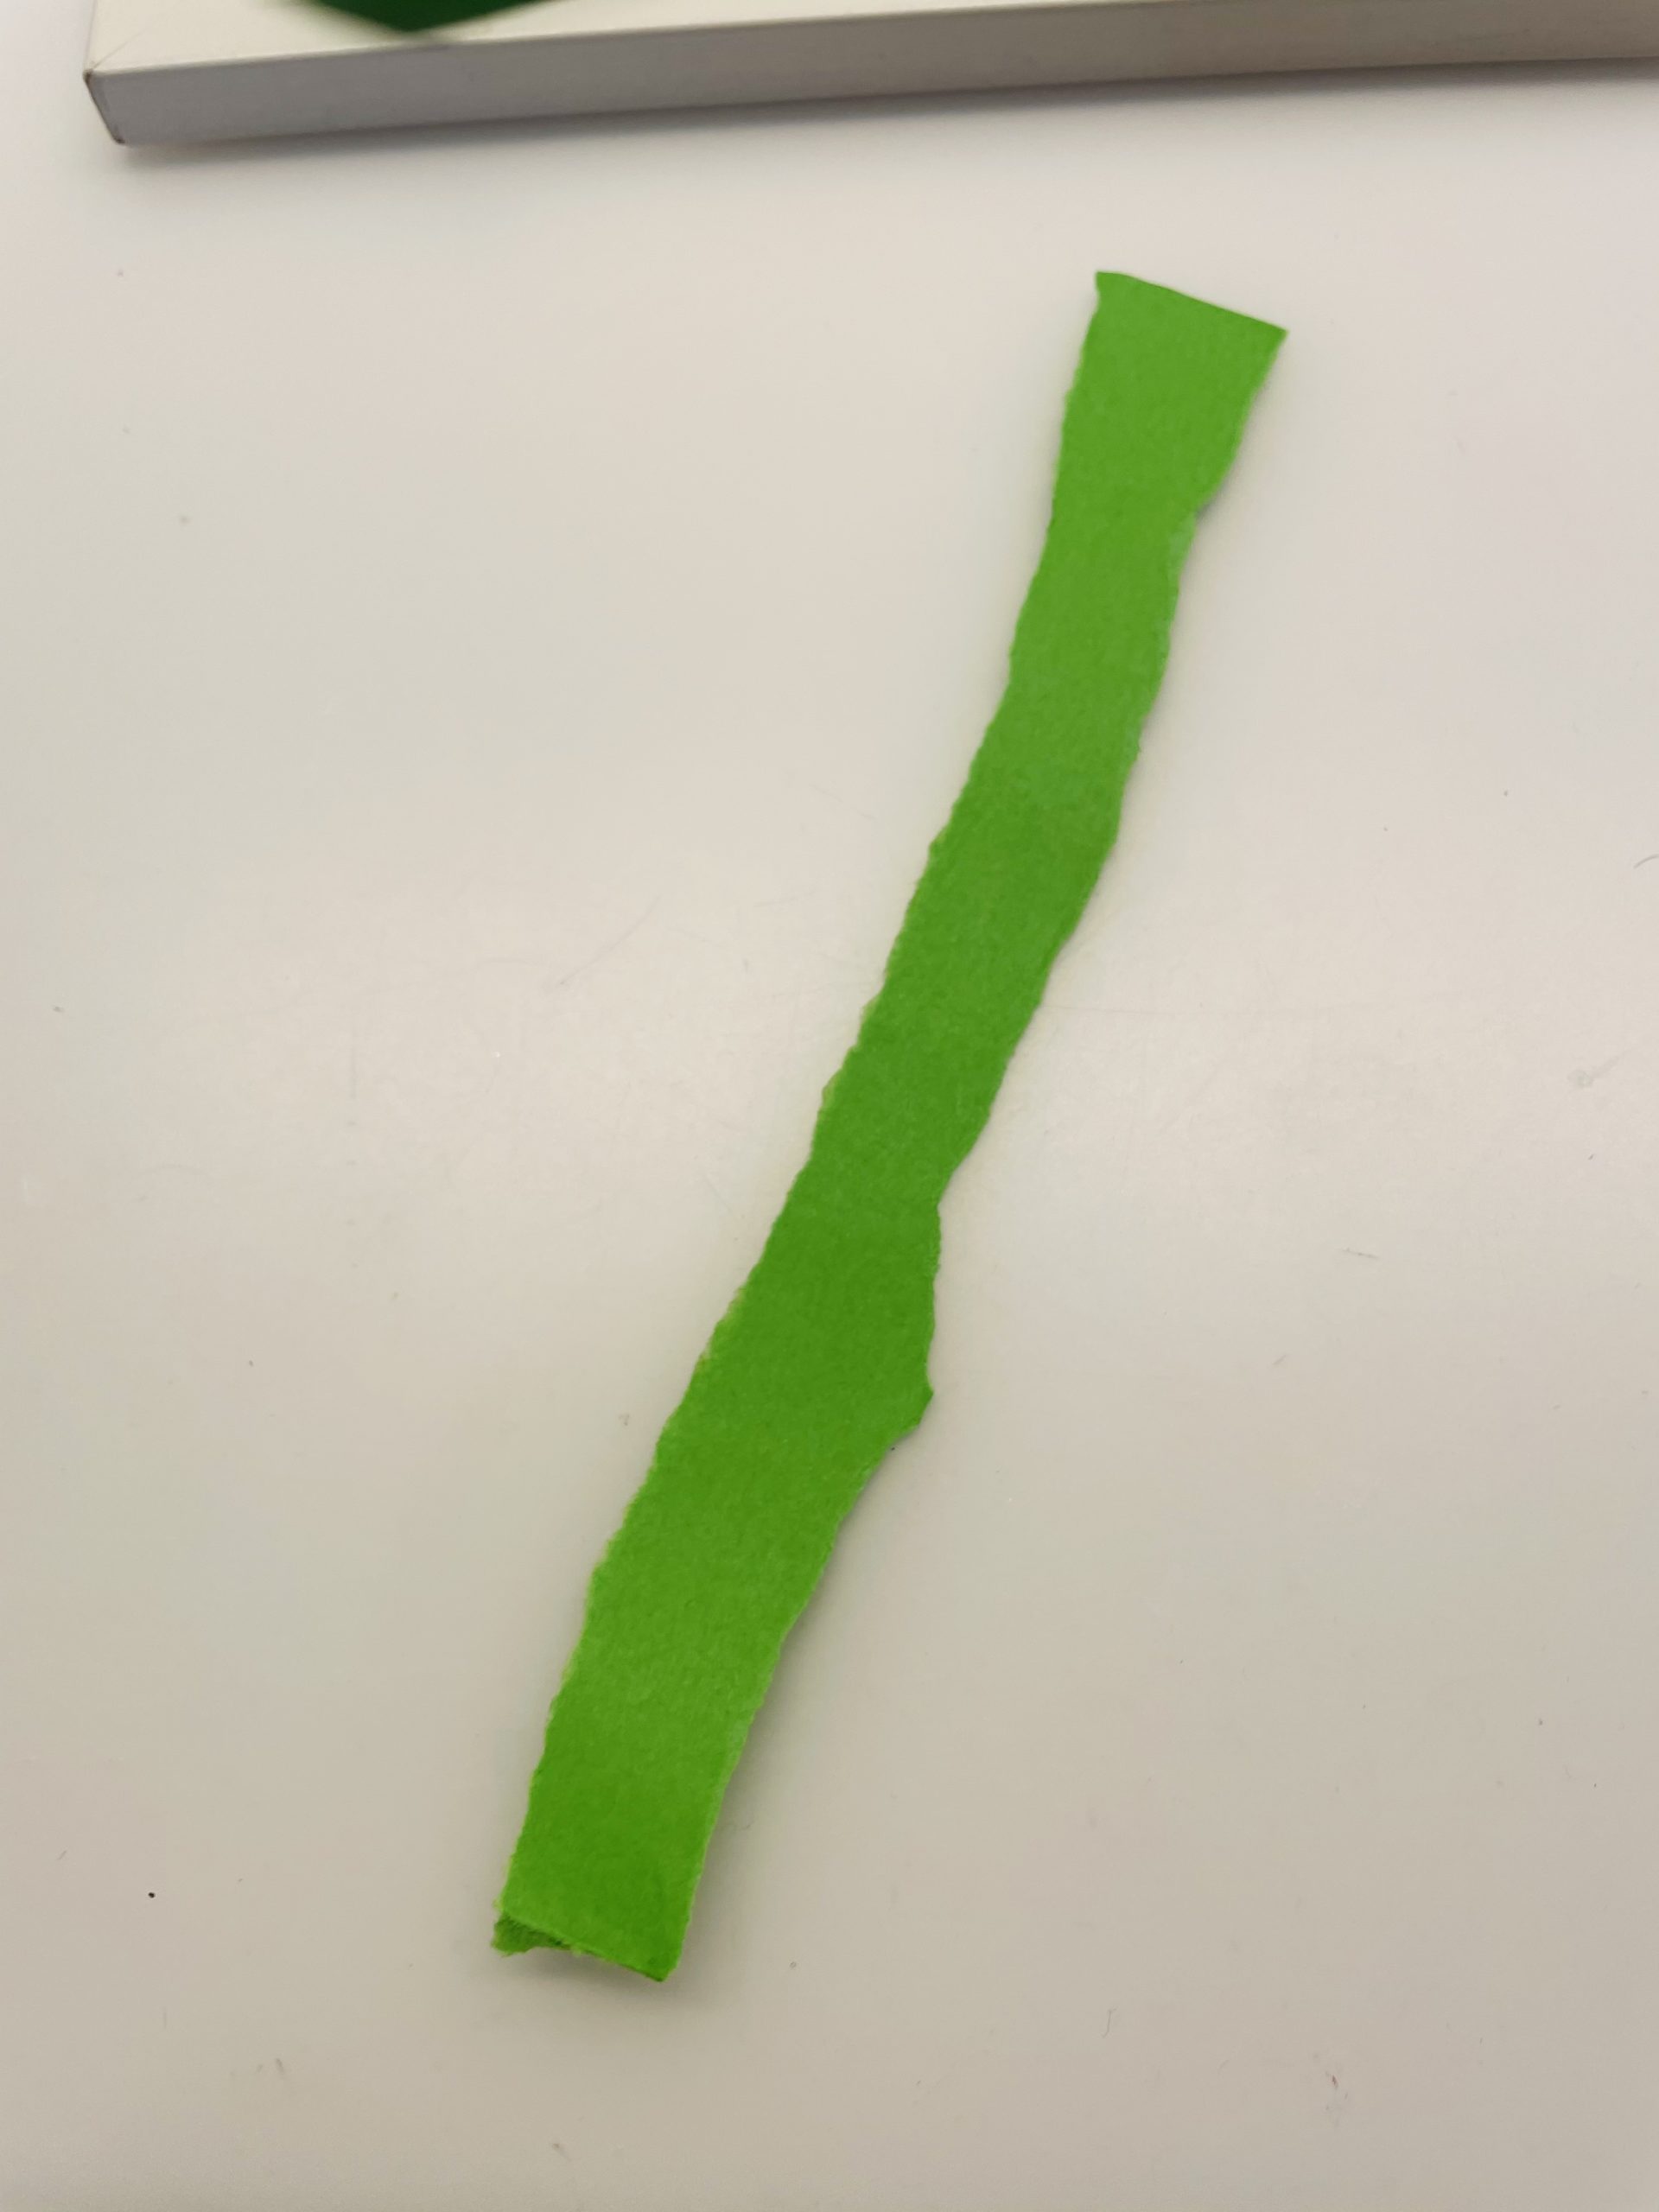 Bild zum Schritt 15 für die Kinder-Beschäftigung: 'Reißt einen weiteren Streifen grünes Papier ab (1cm breit). ...'